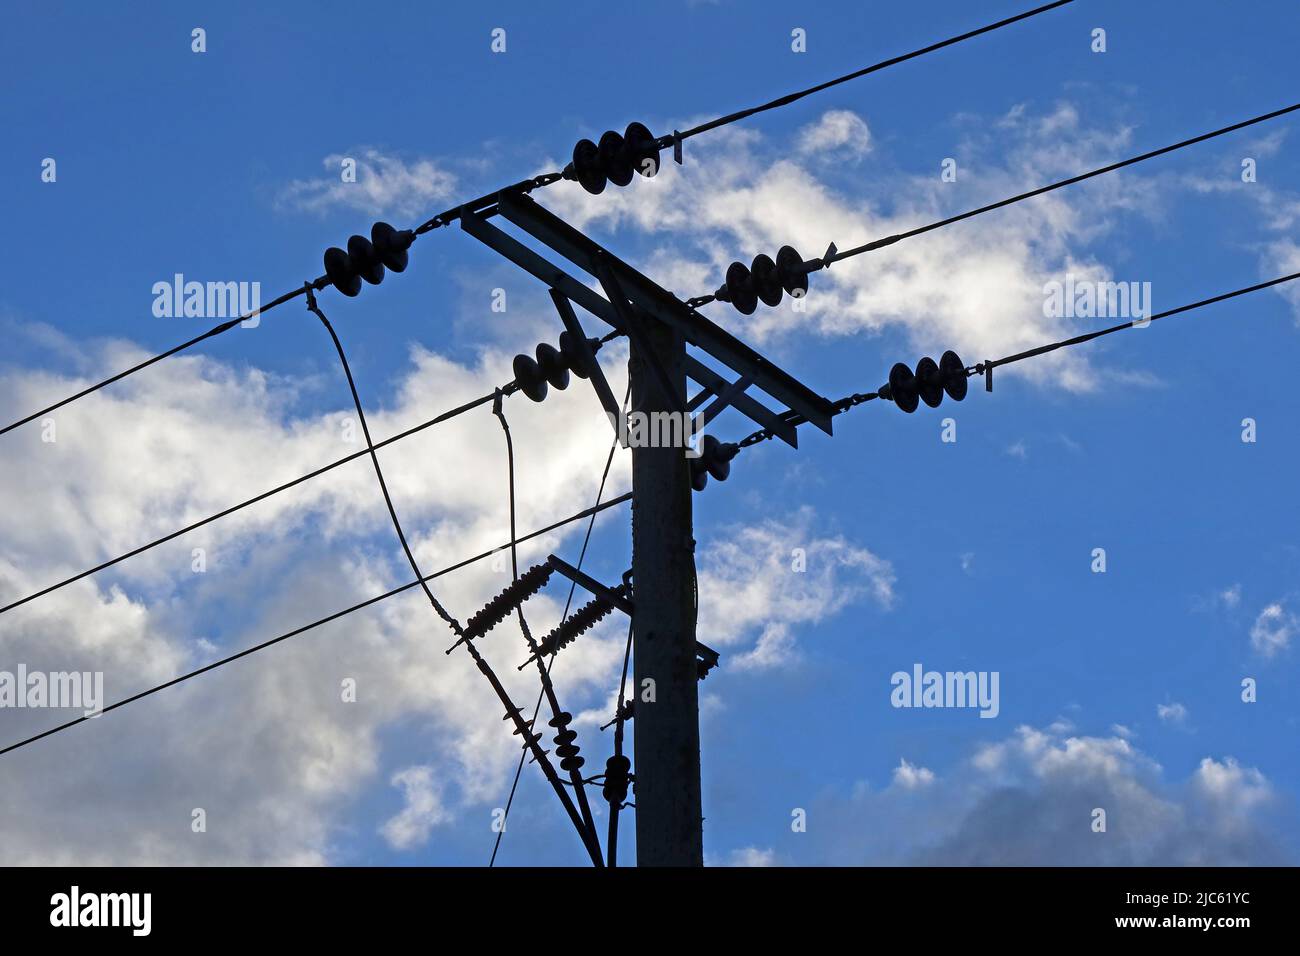 Distribution de lignes électriques triphasées en milieu rural, avec des isolateurs contre un ciel bleu nuageux, Cheshire, Angleterre, Royaume-Uni, WA4 Banque D'Images